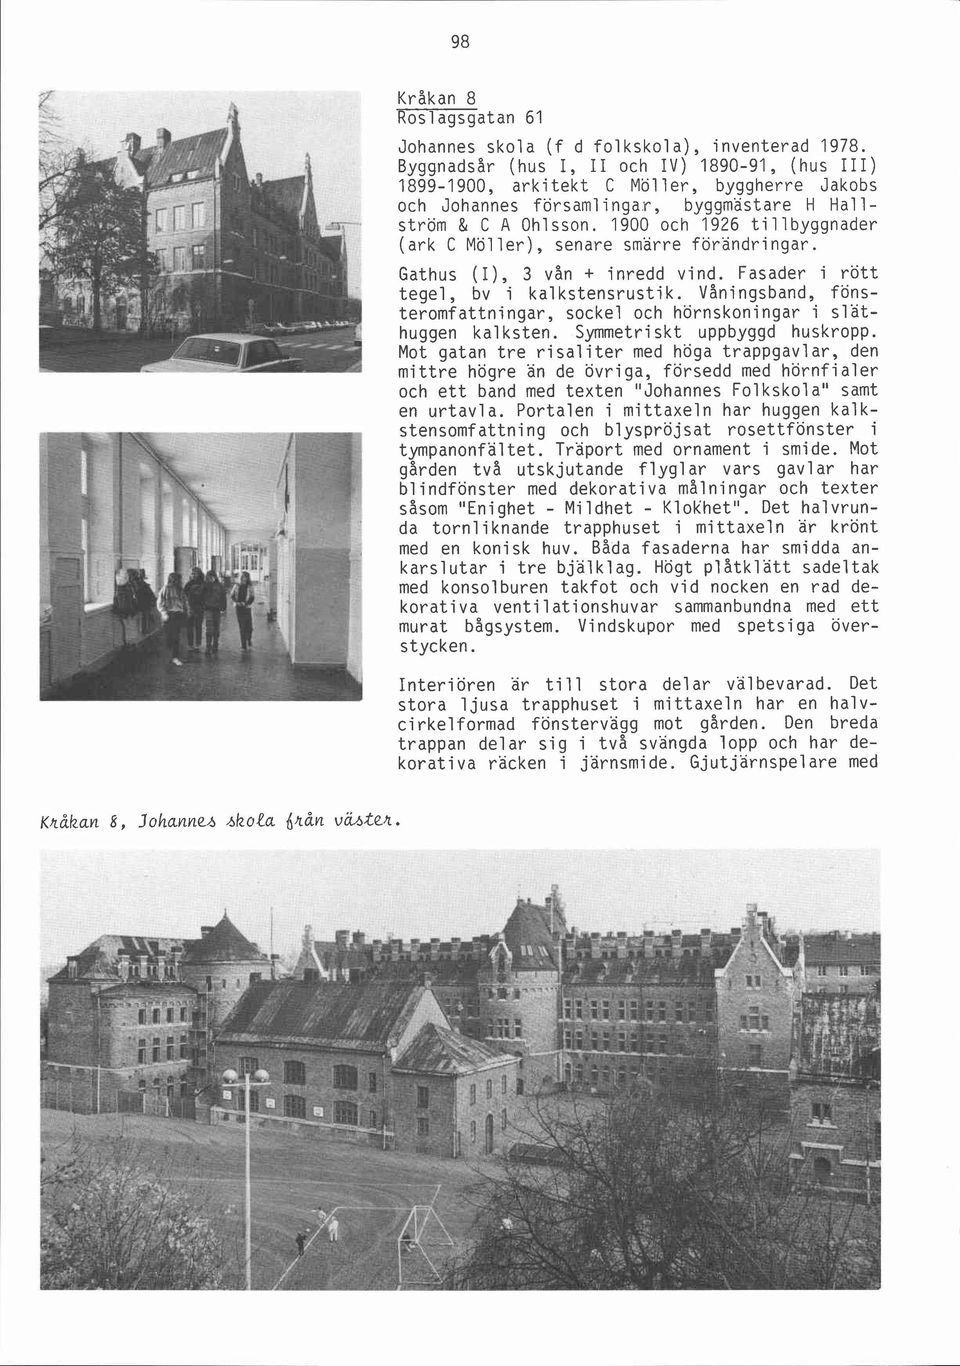 1900 och 1926 tillbyggnader (ark C Mö1 ler), senare smärre förändri ngar. Gathus (I), 3 vån + inredd vind. Fasader i rött tegel, bv i kal kstensrusti k.